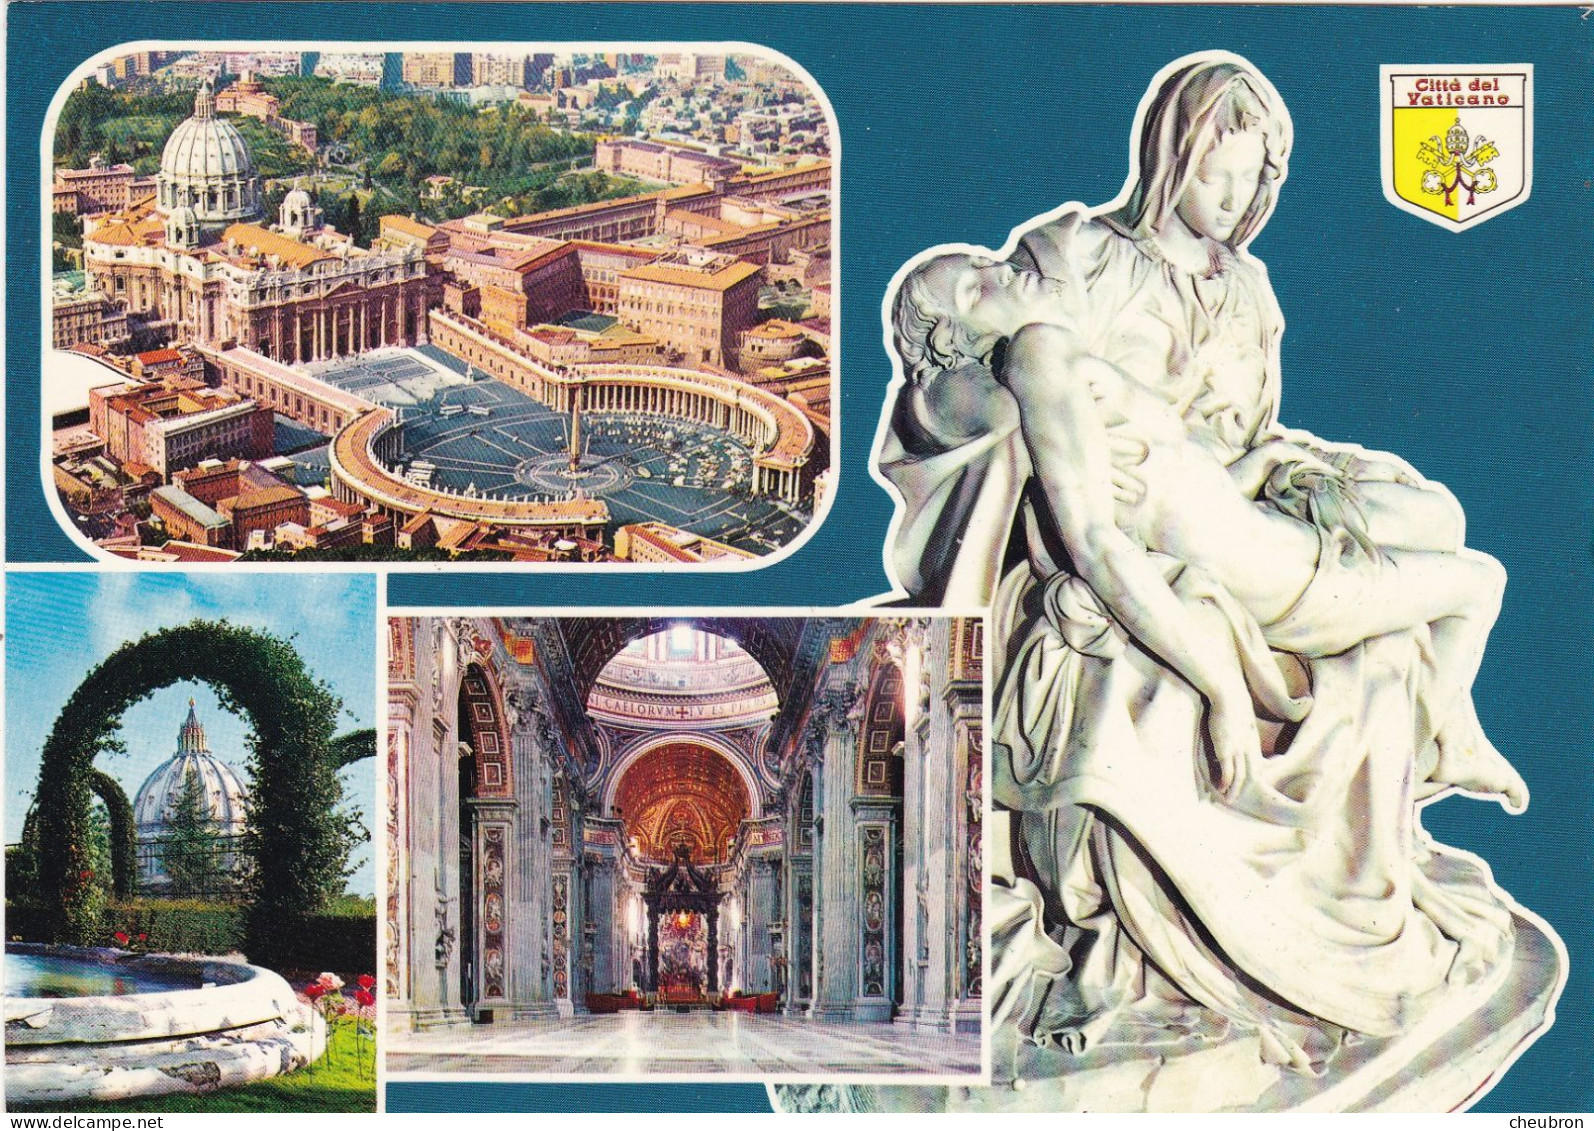 VATICAN. ROME(ENVOYE DE). MULTIVUES. CITE DEL VATICANO. .ANNÉE 1987 + TEXTE + TIMBRE - Vatican